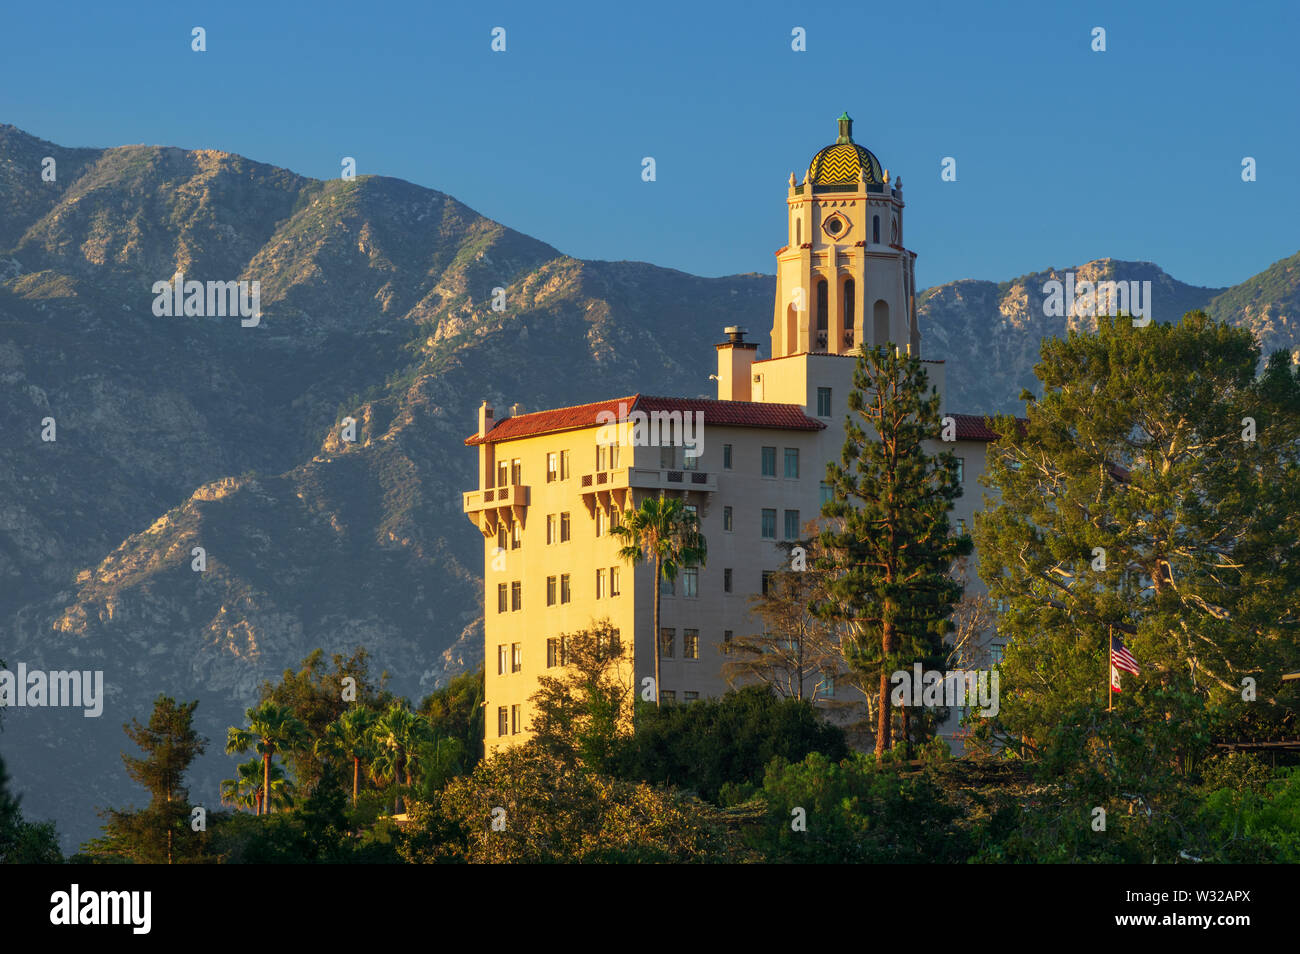 Image, regardant vers le nord, du palais de justice Richard H. Chambers à Pasadena, en Californie, montrant les montagnes San Gabriel en arrière-plan. Banque D'Images